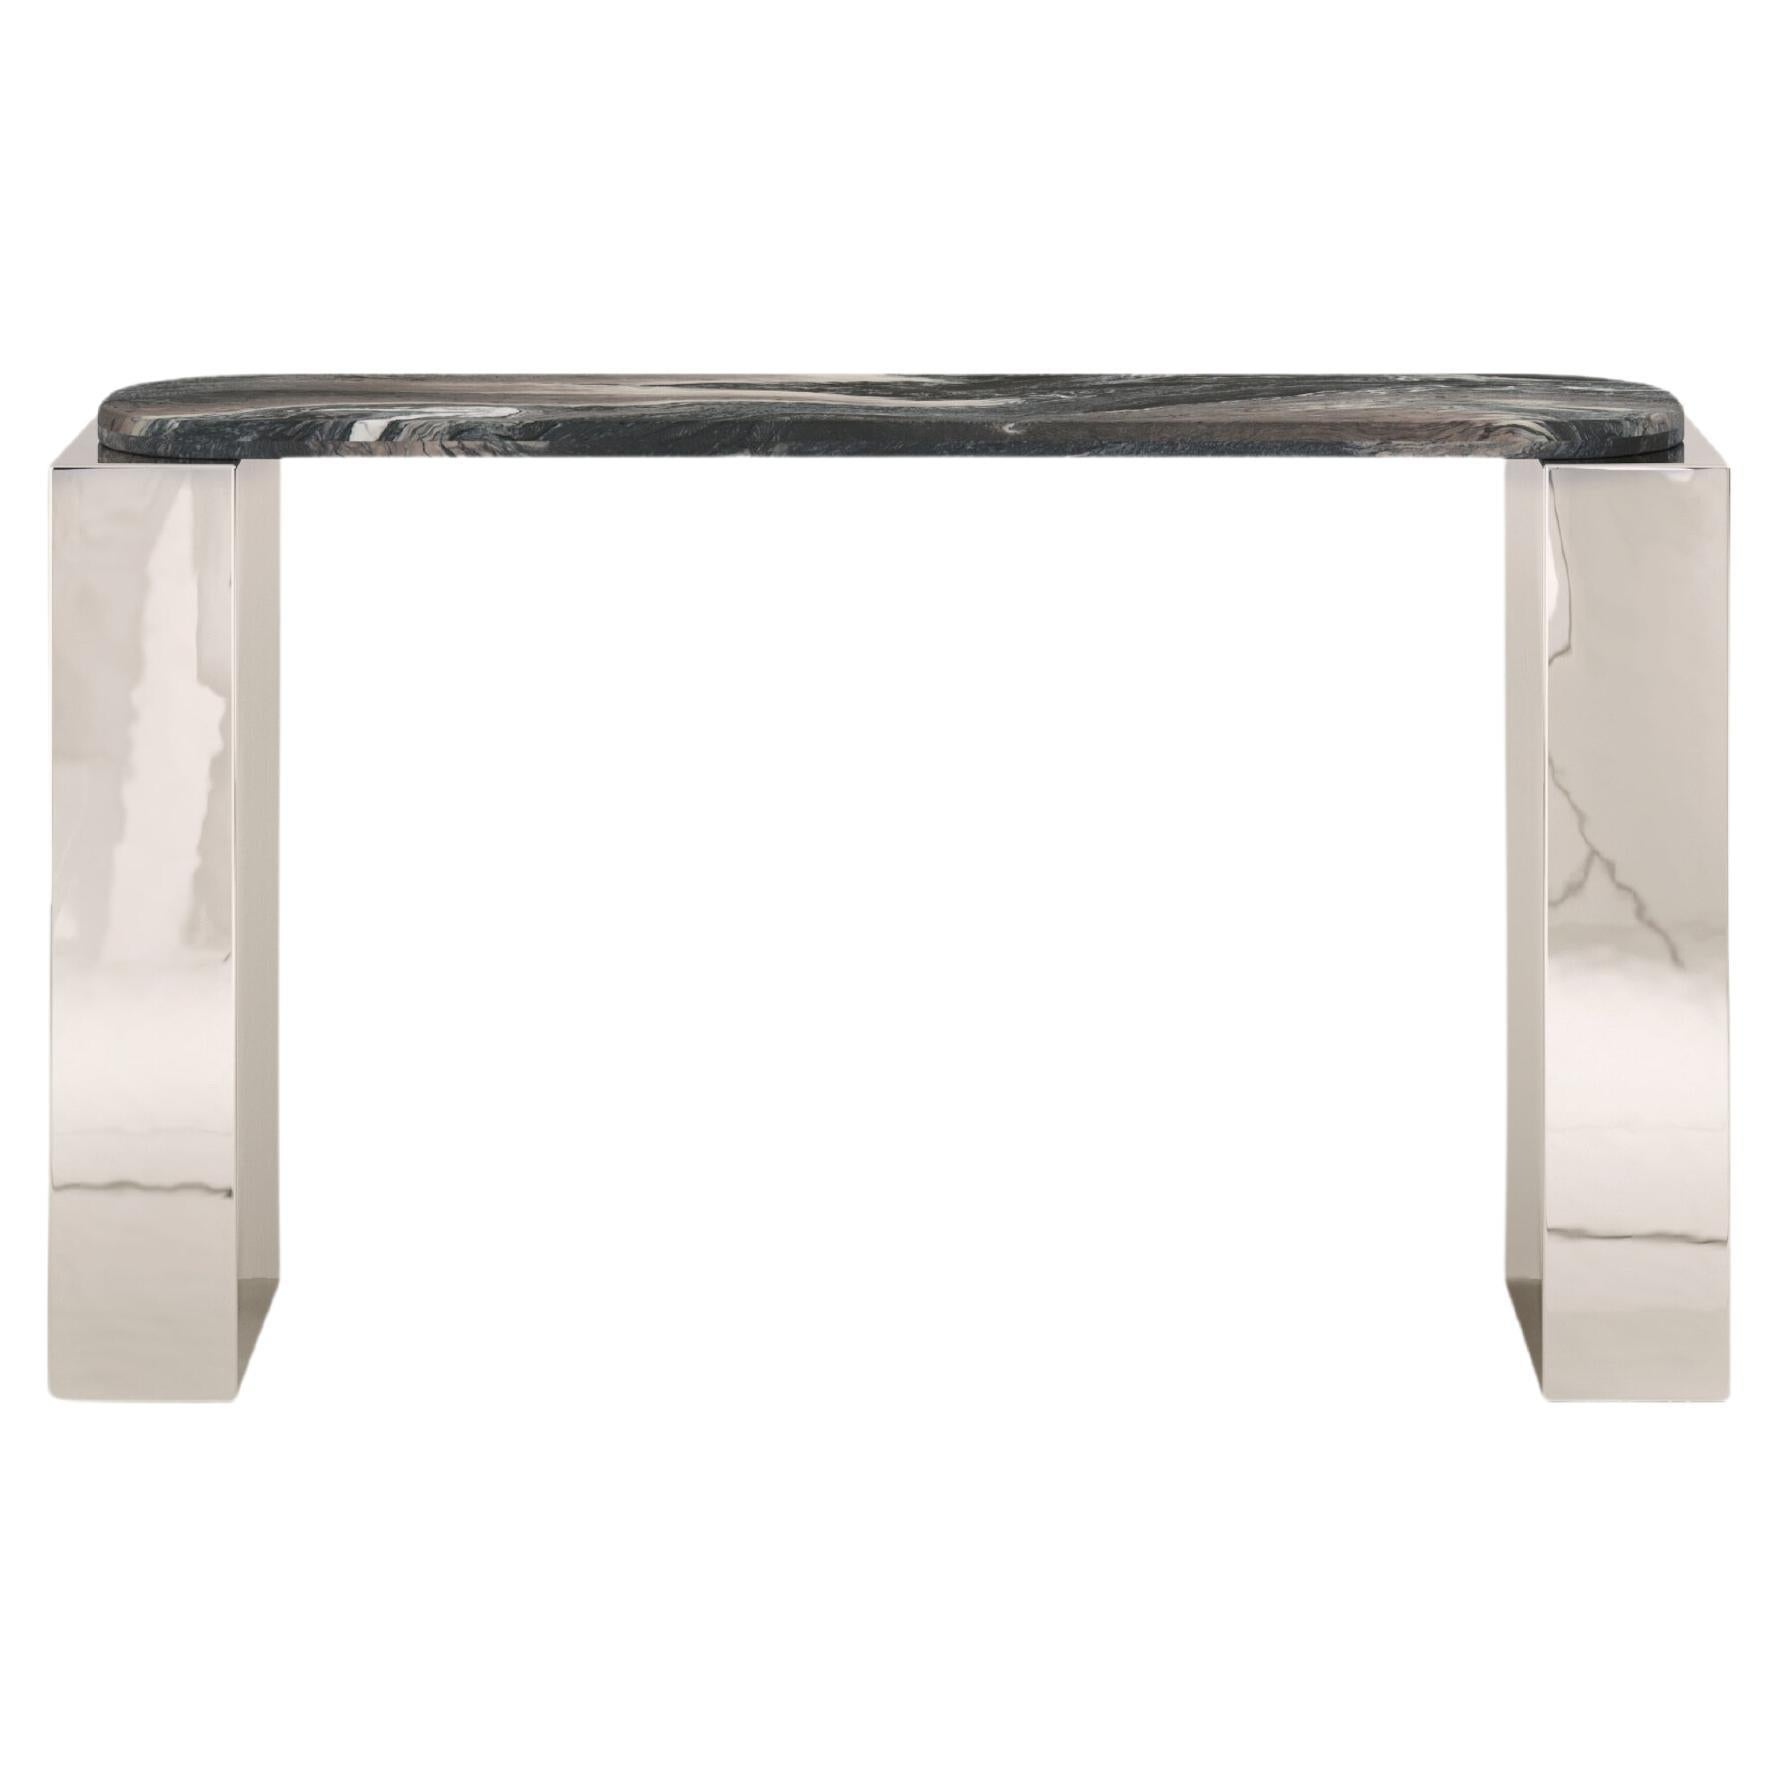 FORM(LA) Cubo Console Table 50”L x 17”W x 36”H Ondulato Marble & Chrome